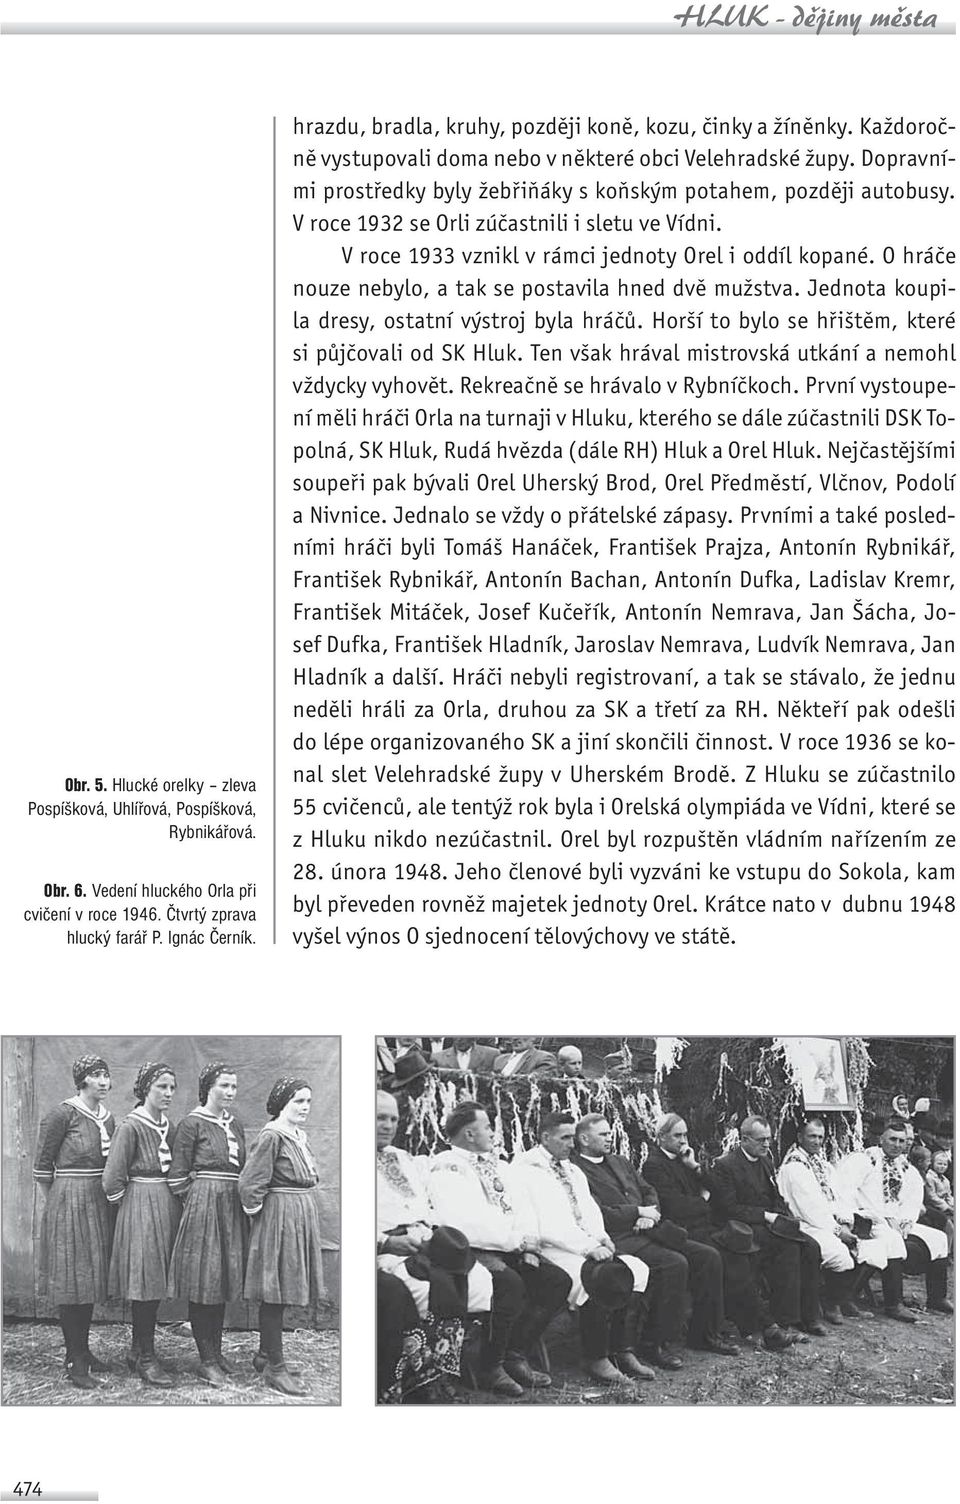 V roce 1932 se Orli zúčastnili i sletu ve Vídni. V roce 1933 vznikl v rámci jednoty Orel i oddíl kopané. O hráče nouze nebylo, a tak se postavila hned dvě mužstva.